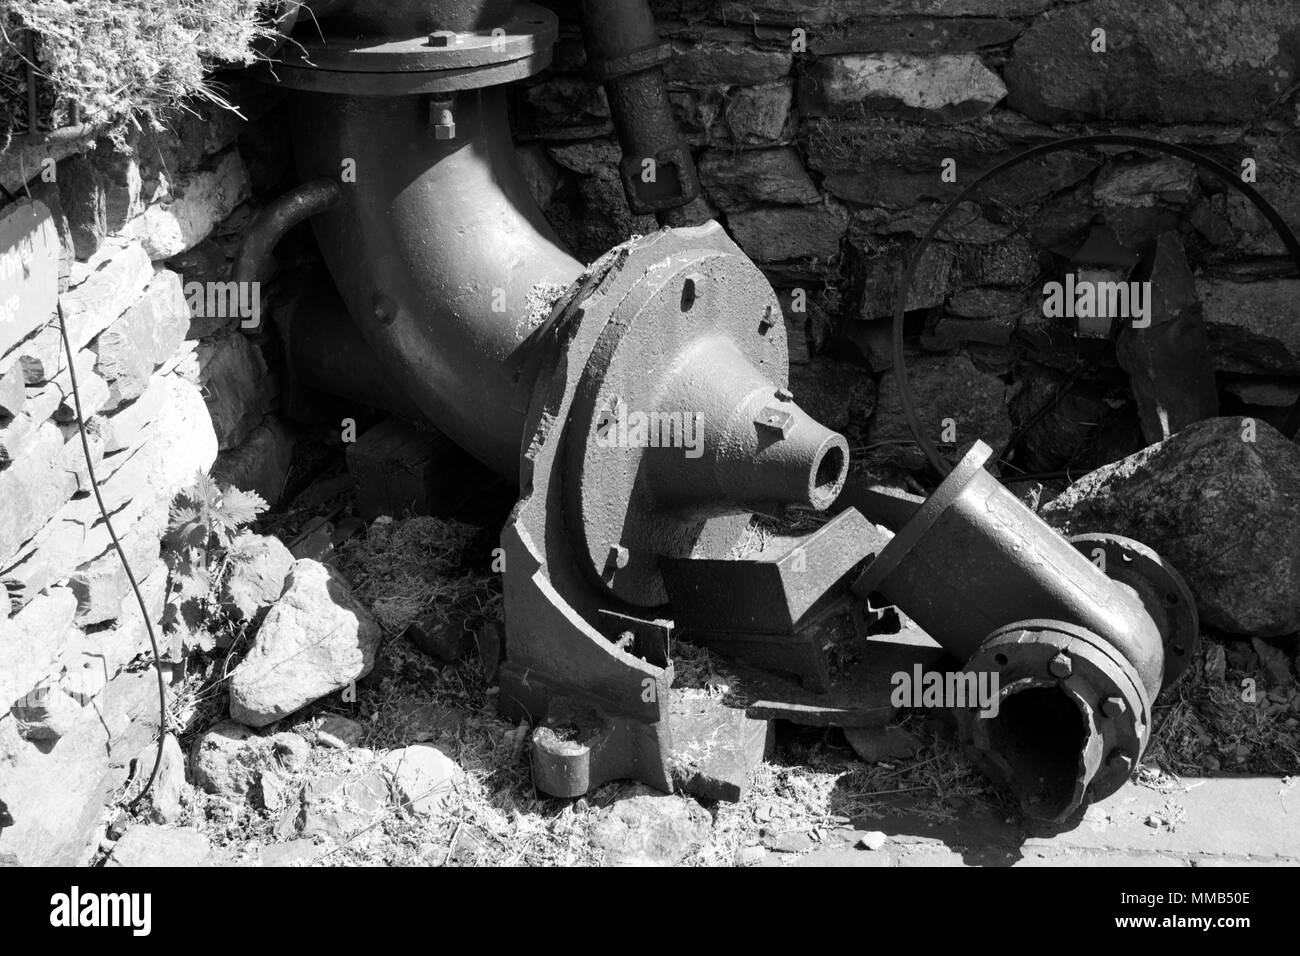 Schwarz-weiß Bild von meinen Maschinen von coppermines Tal, Cumbria, aboce Coniston Water. Stockfoto